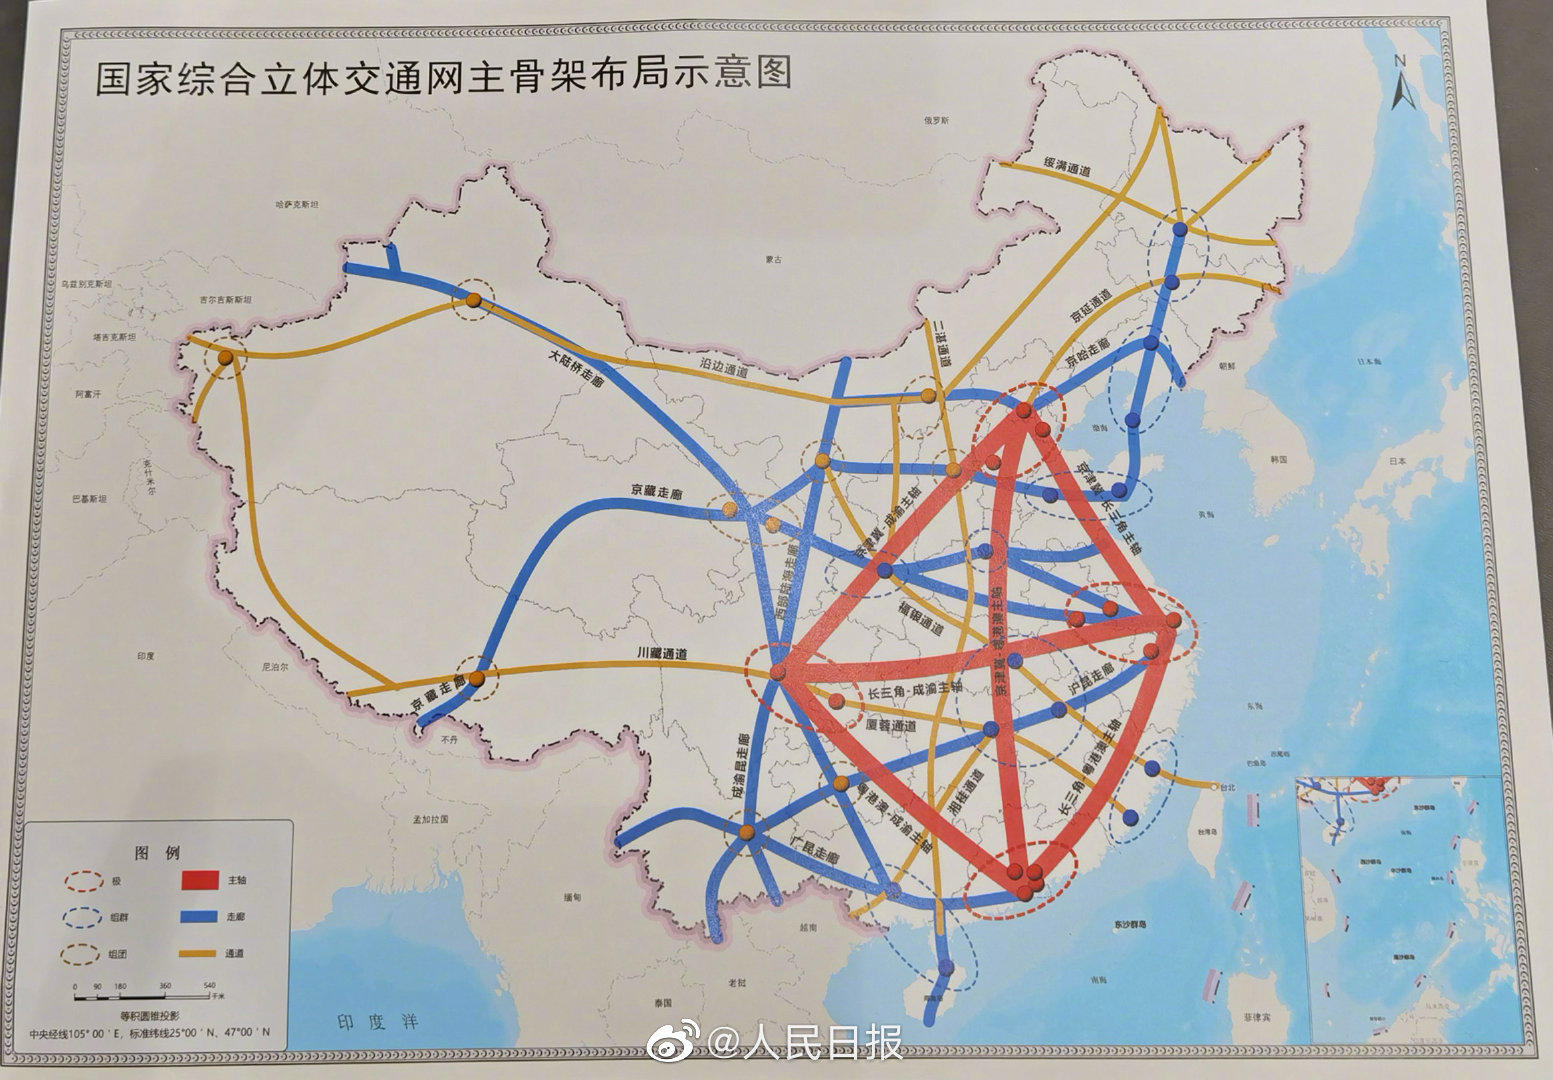 《国家综合立体交通网规划纲要》发布,成渝并列为"4极